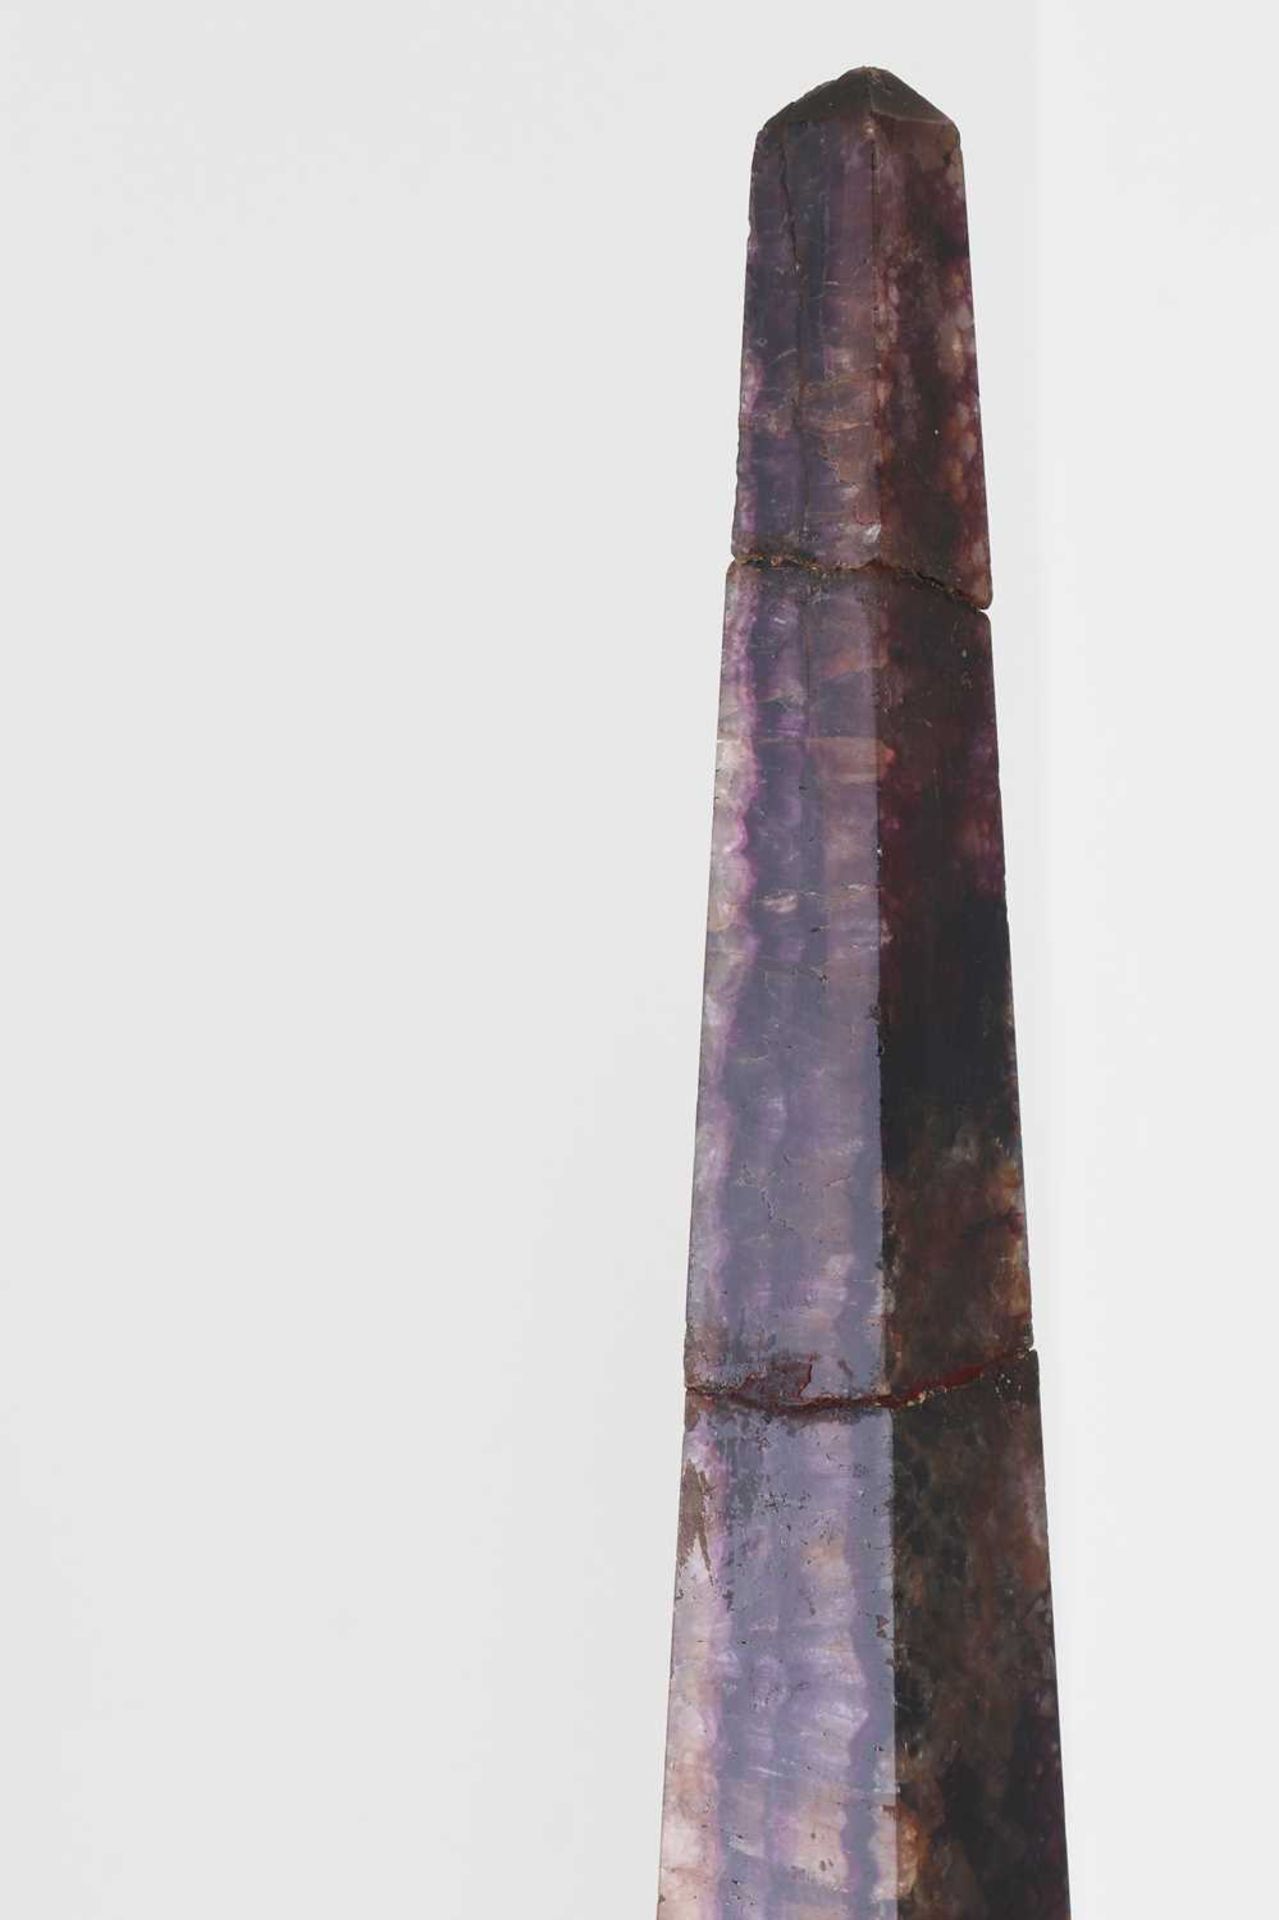 Two Blue John or Derbyshire fluorspar obelisks, - Image 5 of 5